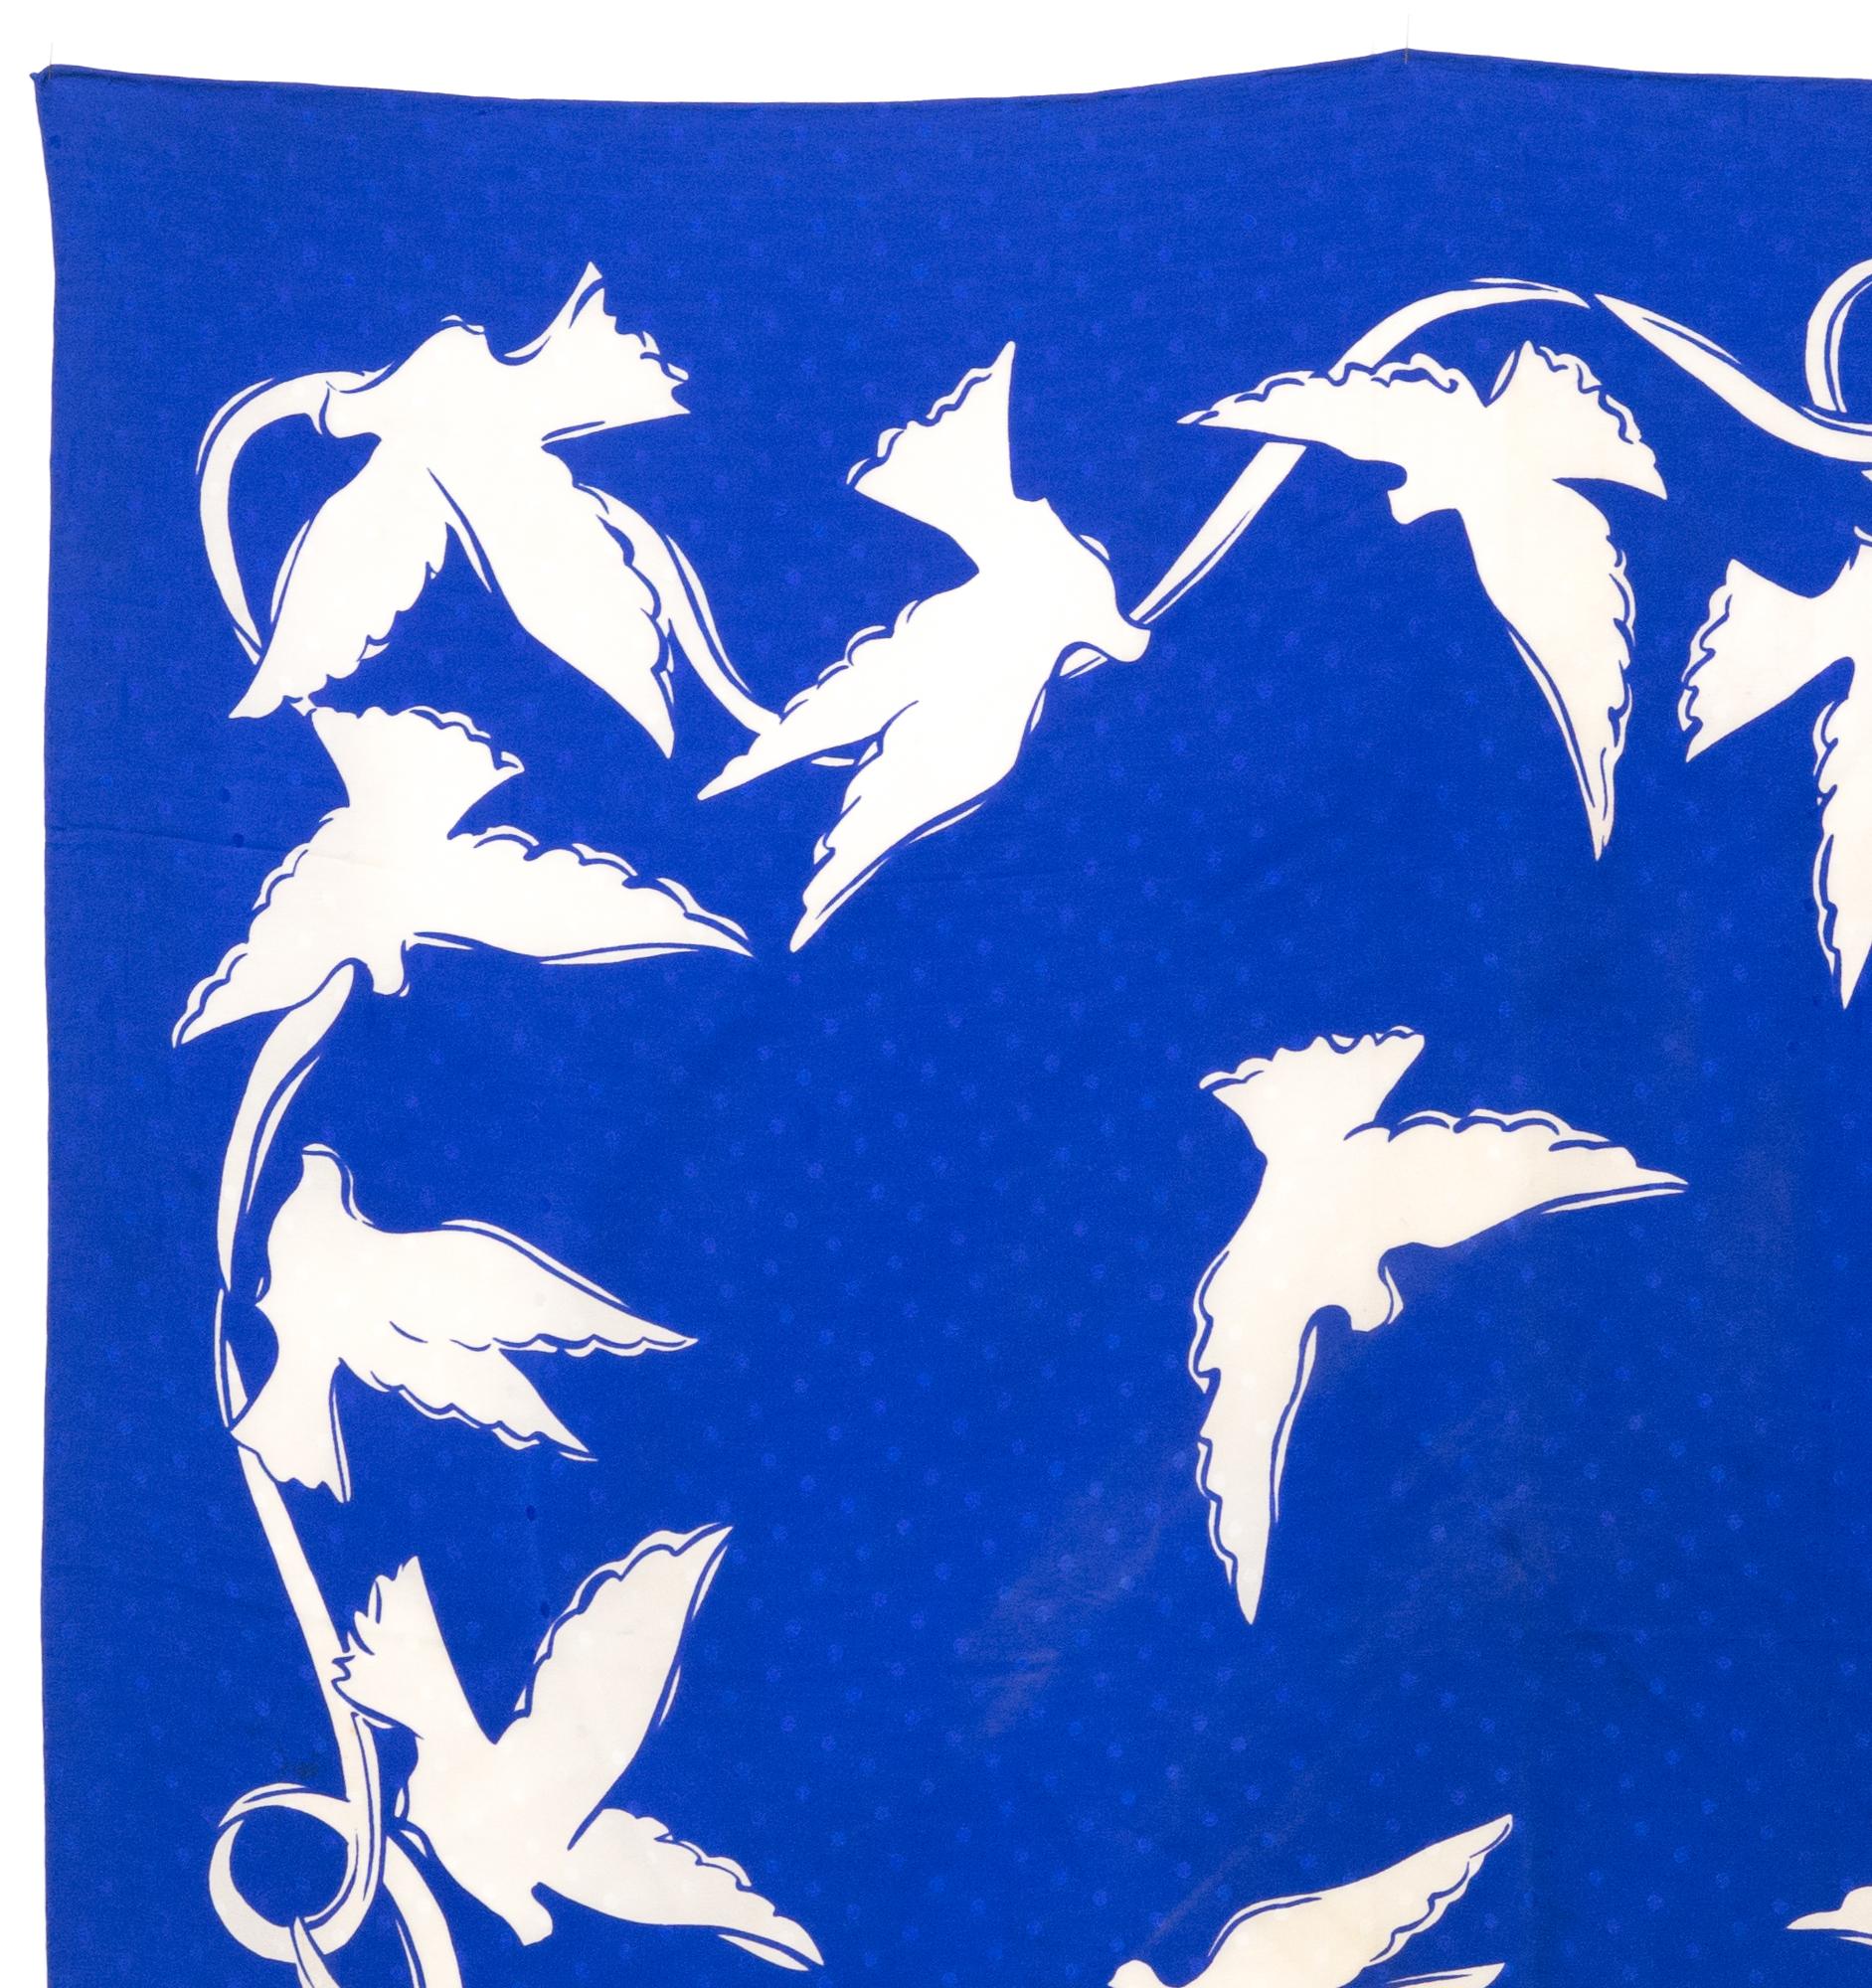 YSL Yves Saint Laurent  Seidenschal mit weißen Tauben auf blauem Jacquard-Grund, eine YSL-Signatur. 
Circa 1980er Jahre
In gutem Vintage-Zustand. Hergestellt in Frankreich.
34,6 Zoll (88 cm) X 34,6 Zoll (88 cm)
Wir garantieren Ihnen, dass Sie dies